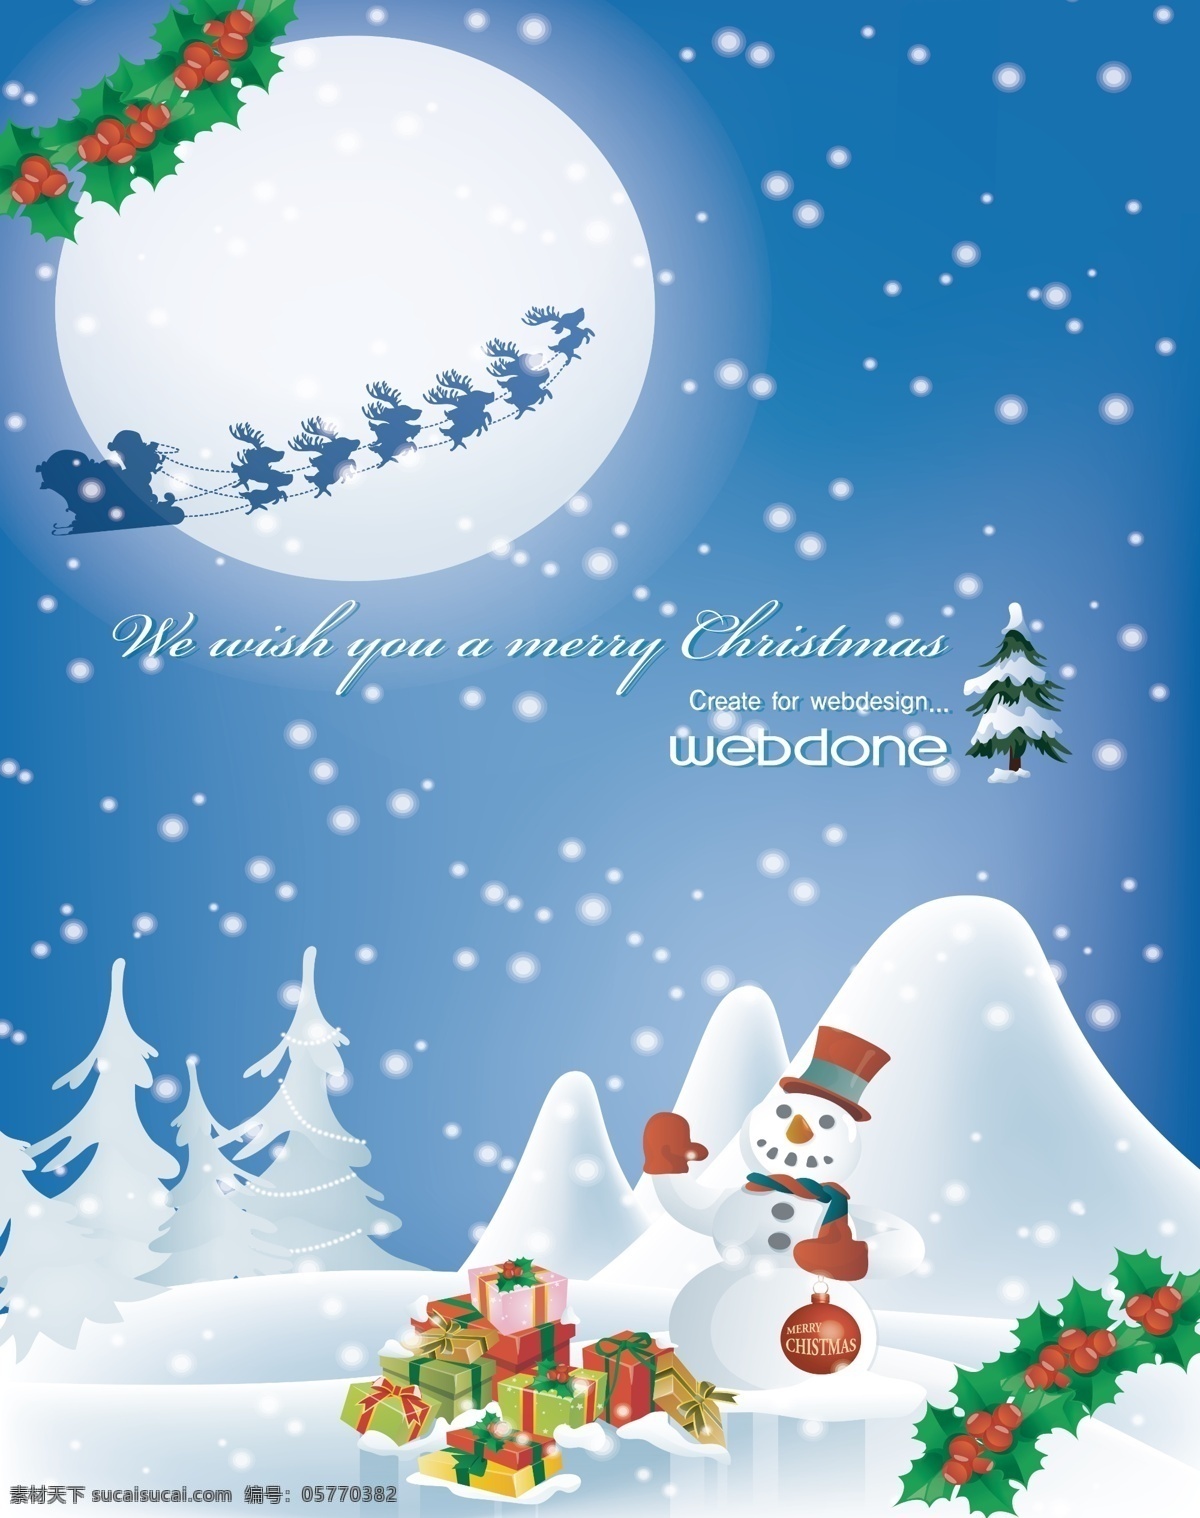 卡通 背景 卡通图片 可爱卡通图片 设计图 月亮 雪人 大雪 圣诞树 动漫 可爱